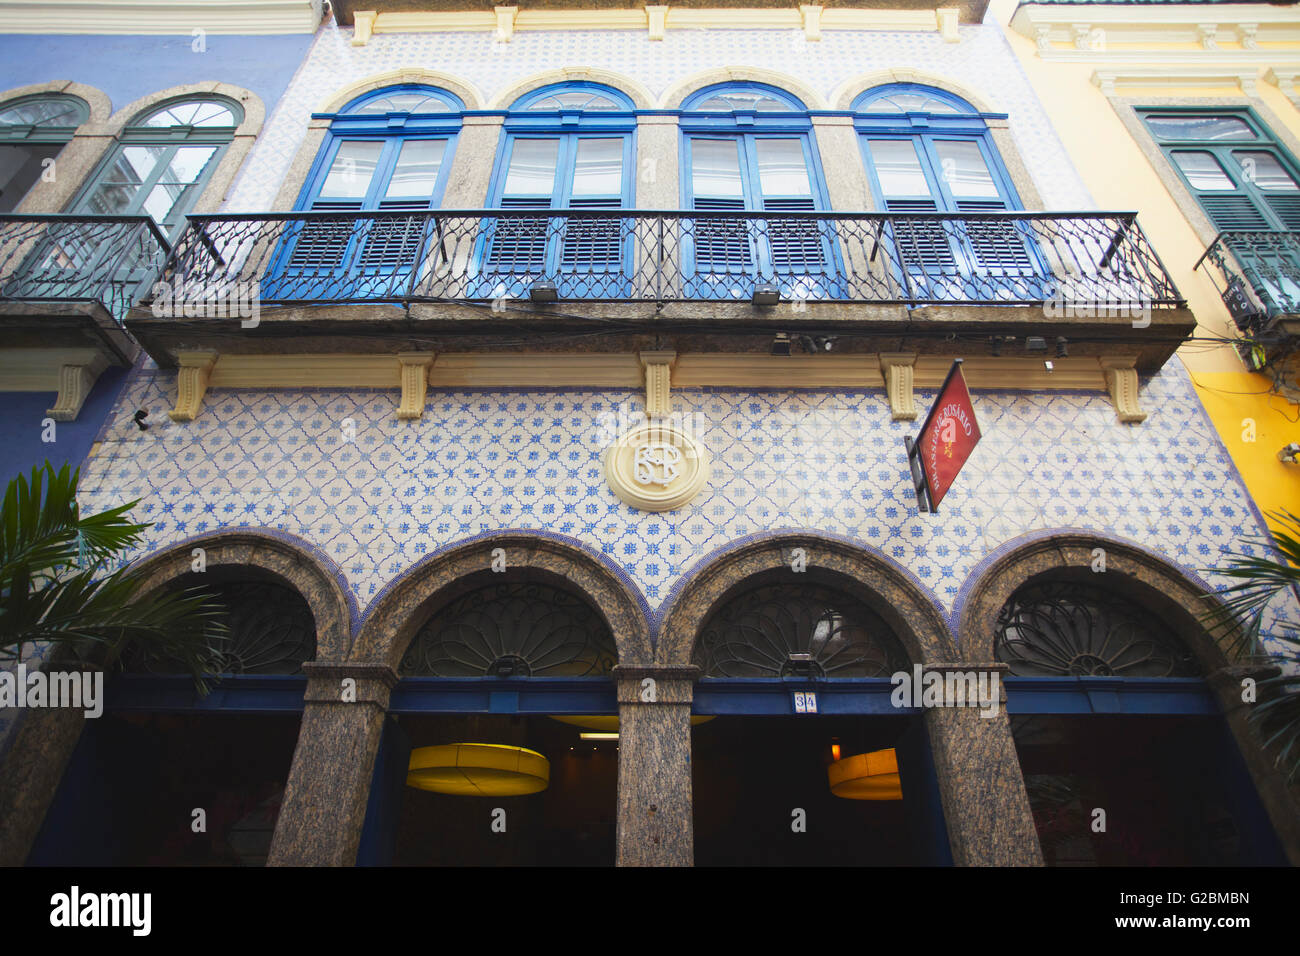 Architecture of restaurants along Travessa do Comercio, Centro, Rio de Janeiro, Brazil Stock Photo